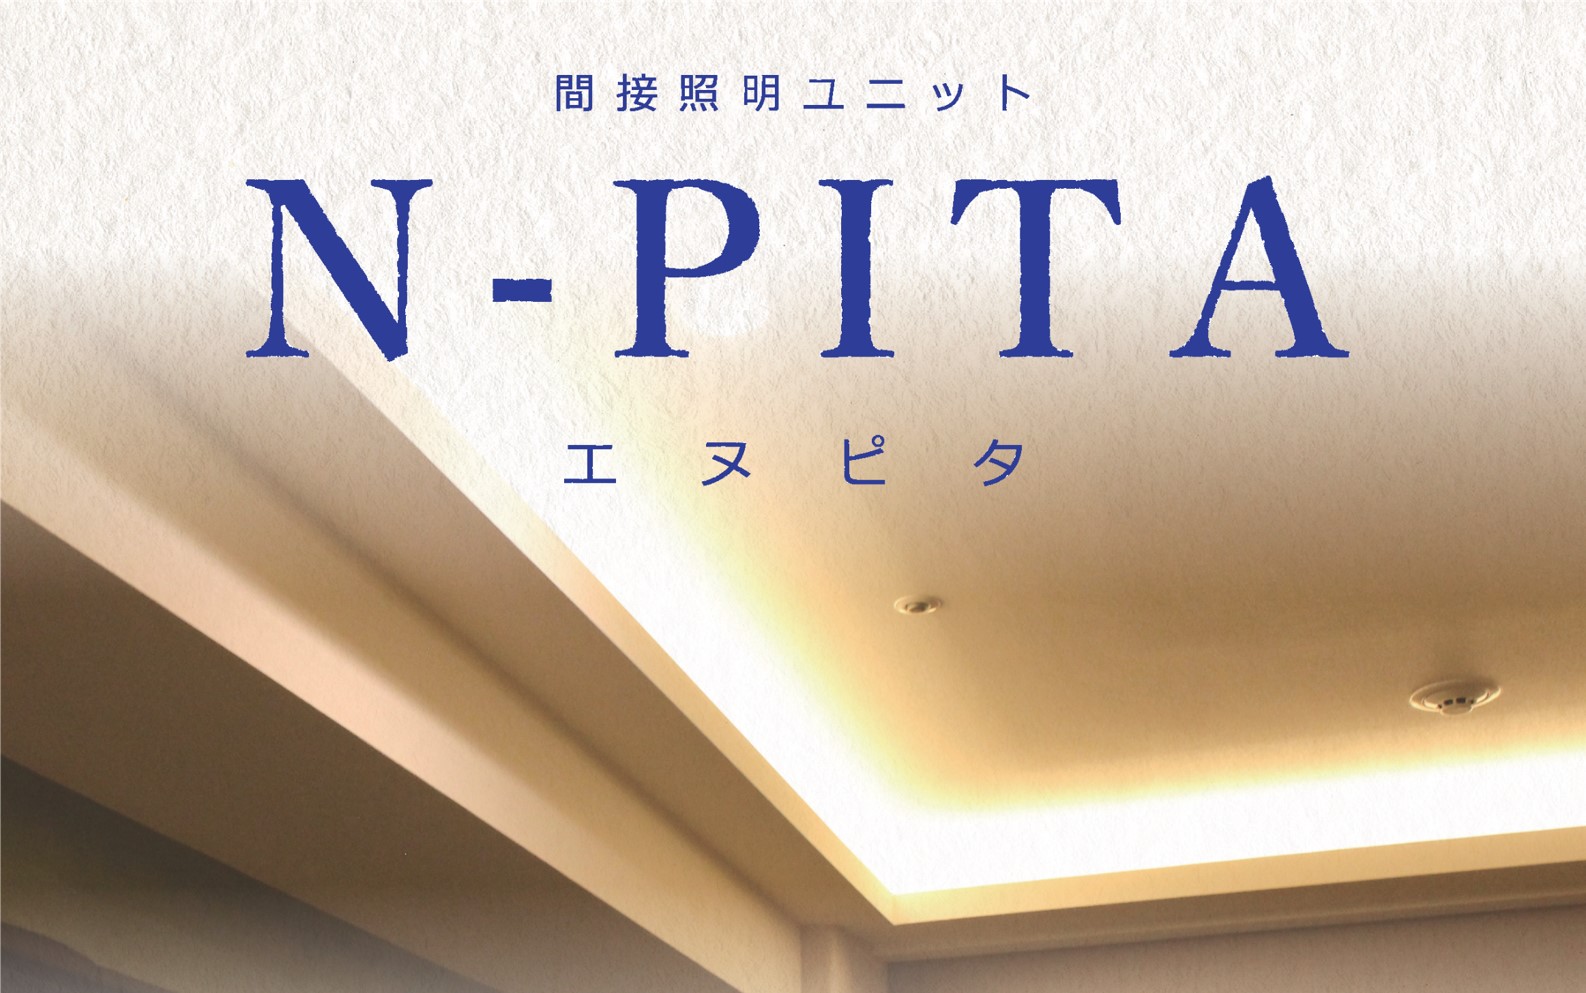 簡単施工と安定品質を実現 間接照明ユニット N Pita エヌピタ を新発売 野原ホールディングスのプレスリリース